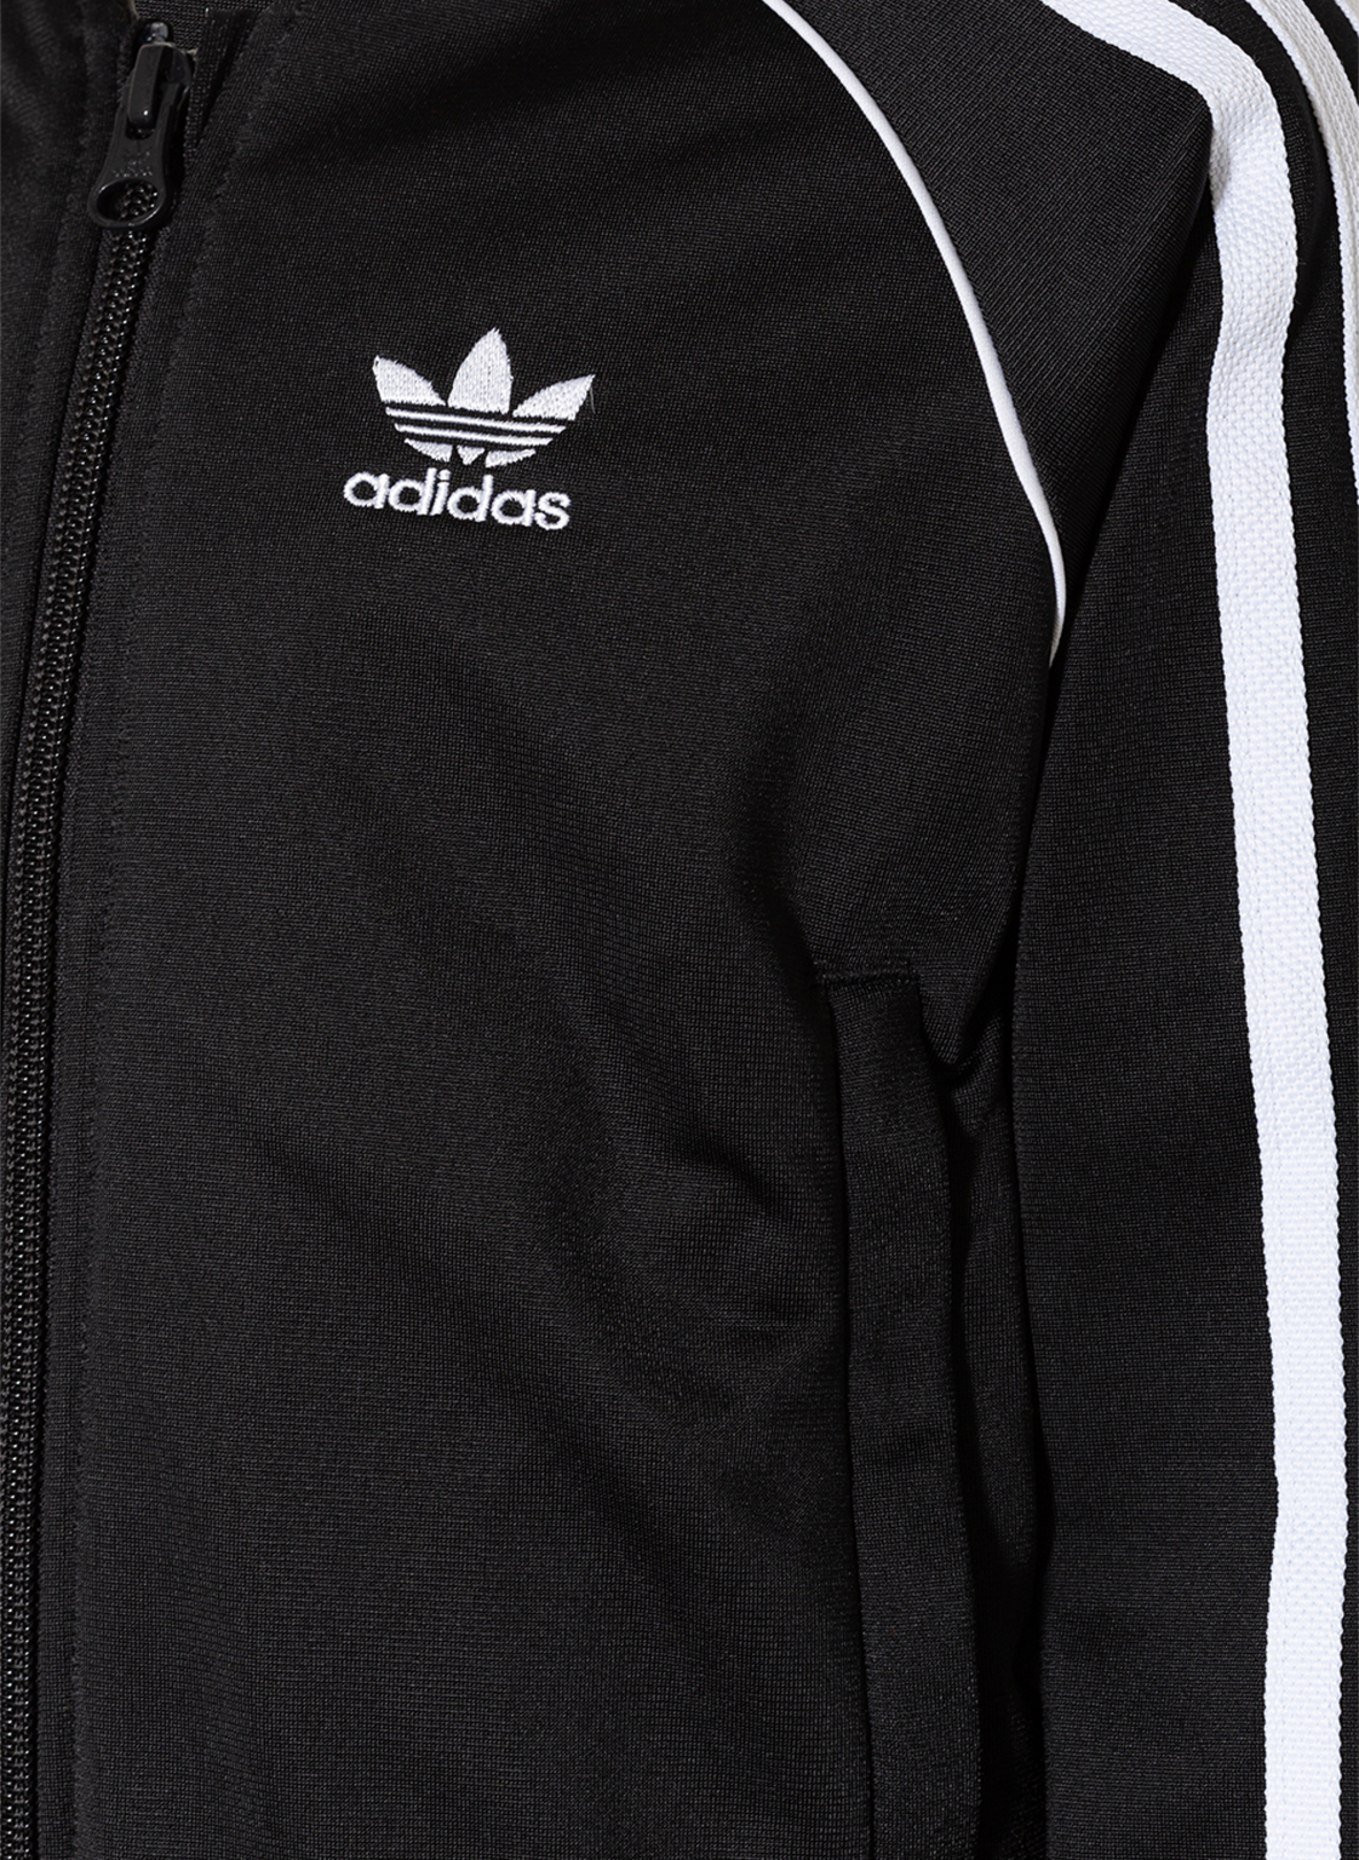 adidas Originals Galonstreifen Trainingsanzug schwarz/ mit in weiss